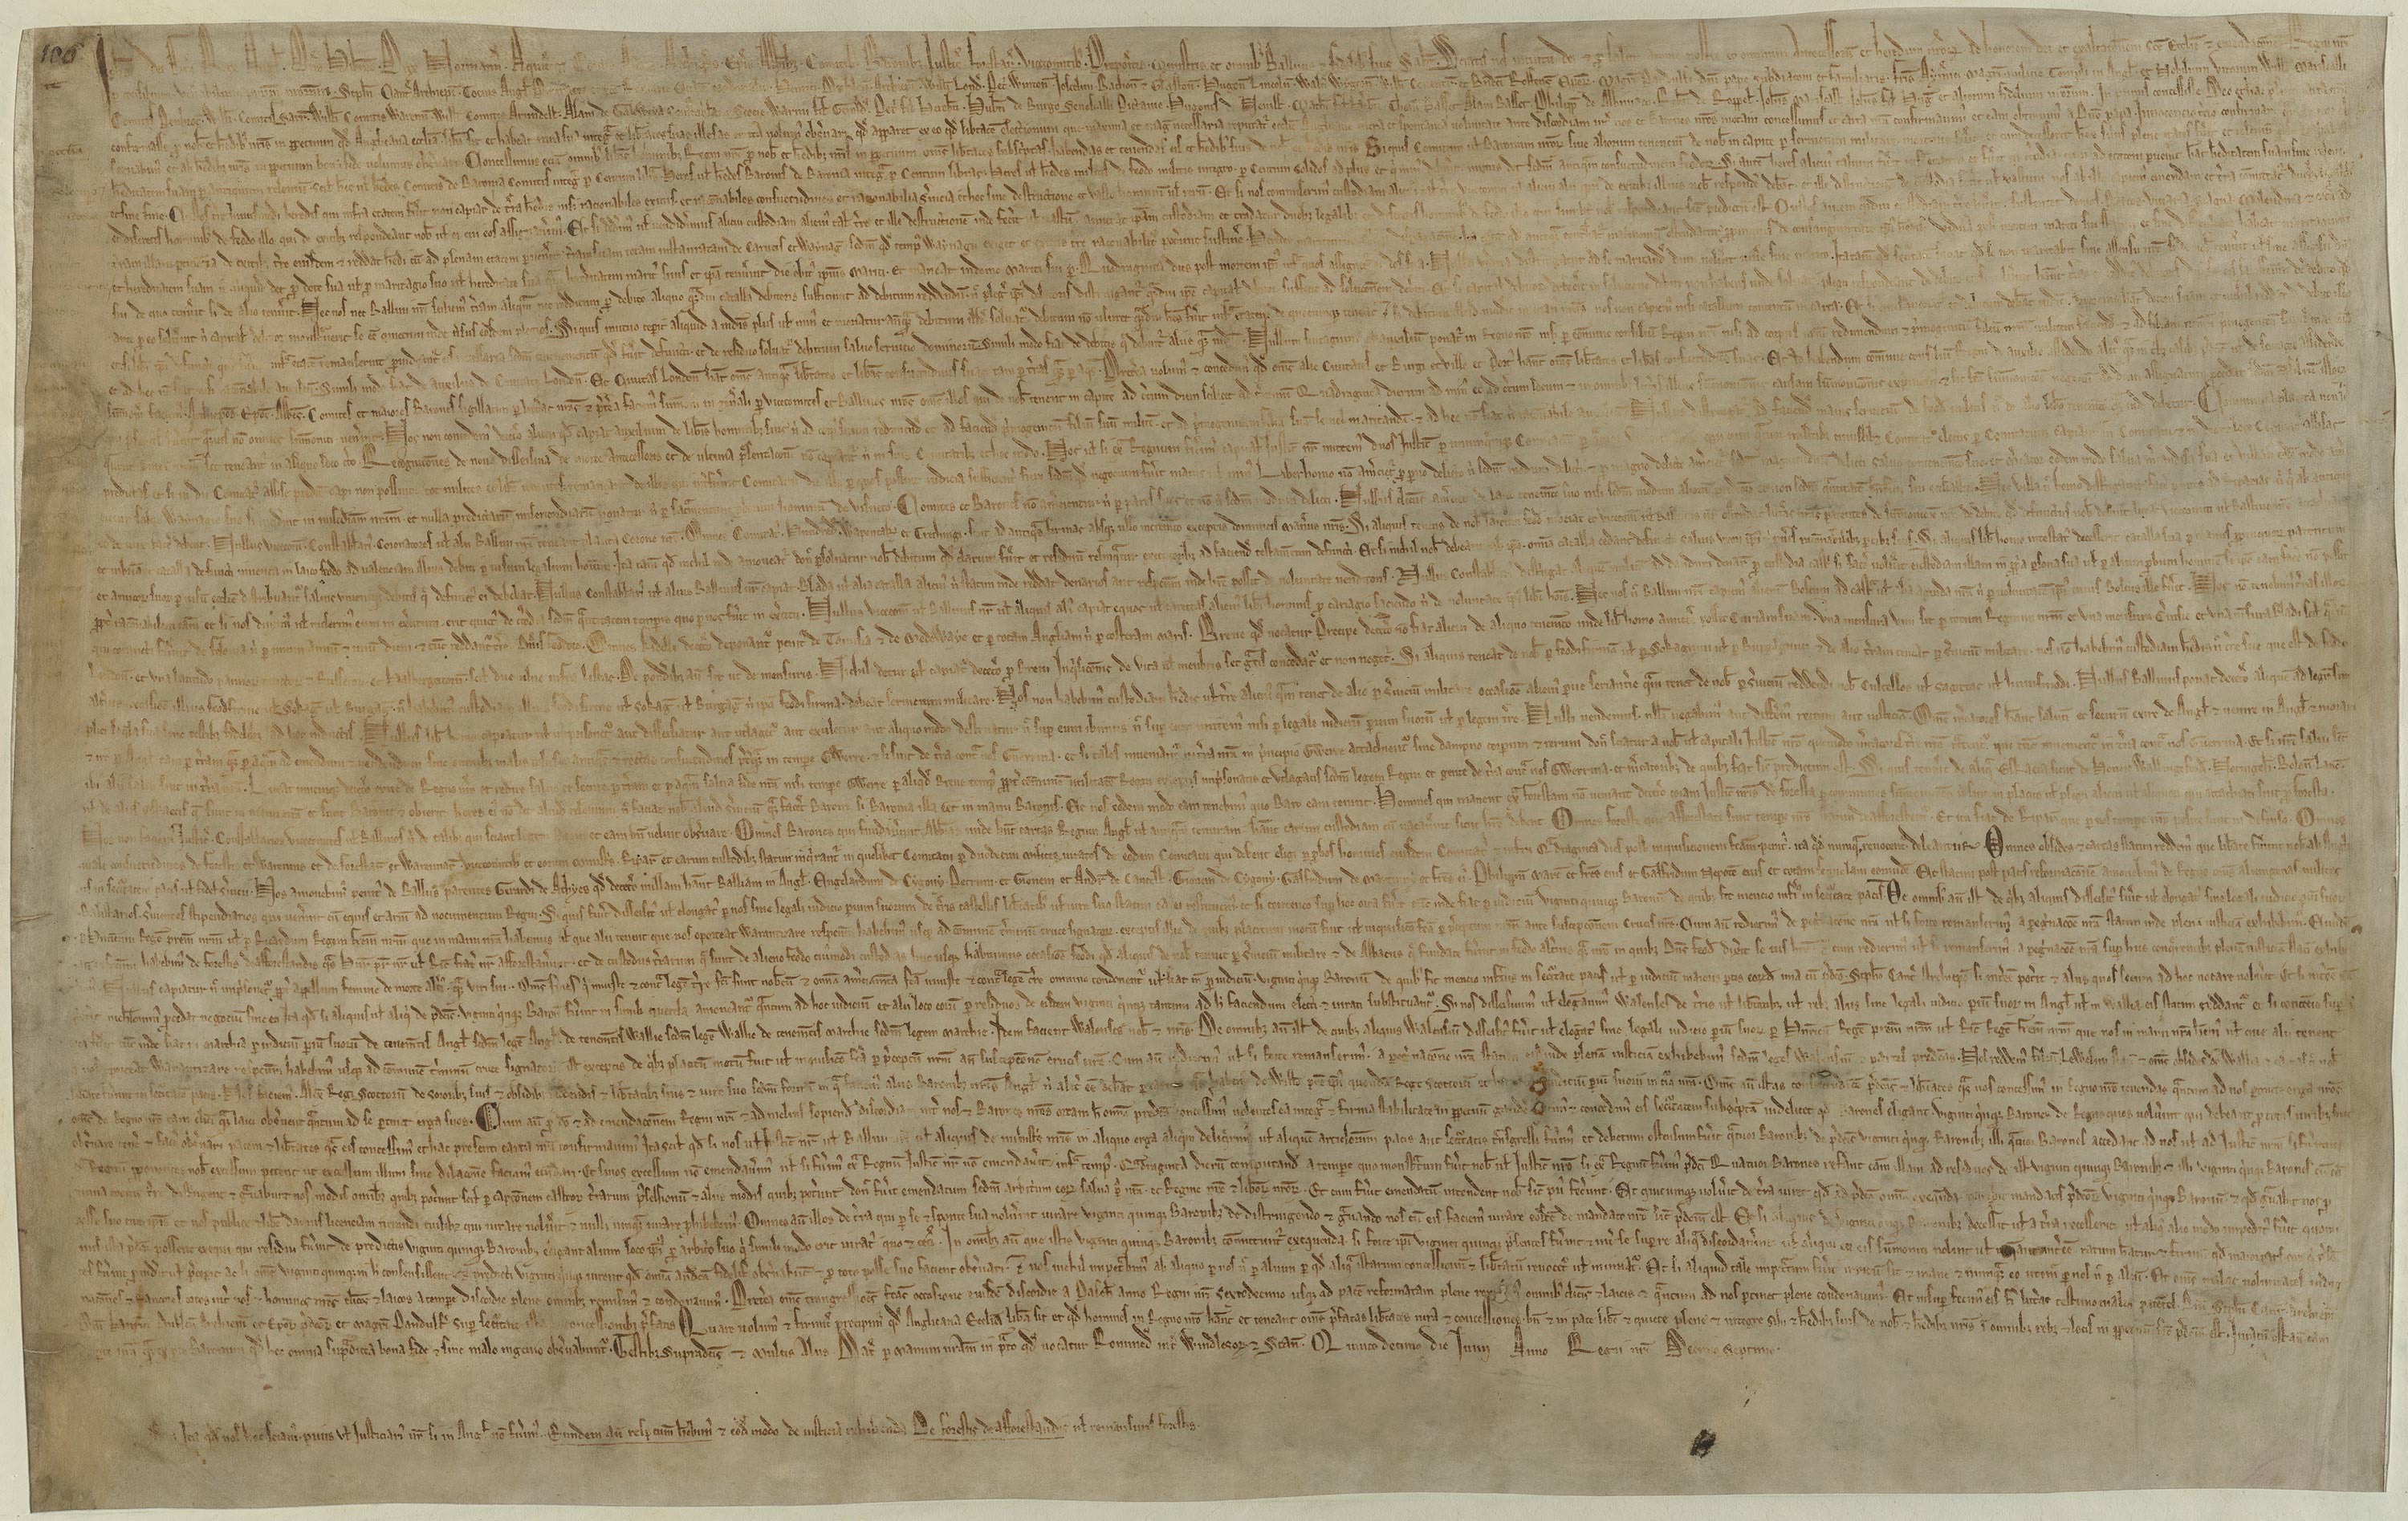 800 year old Magna Carta